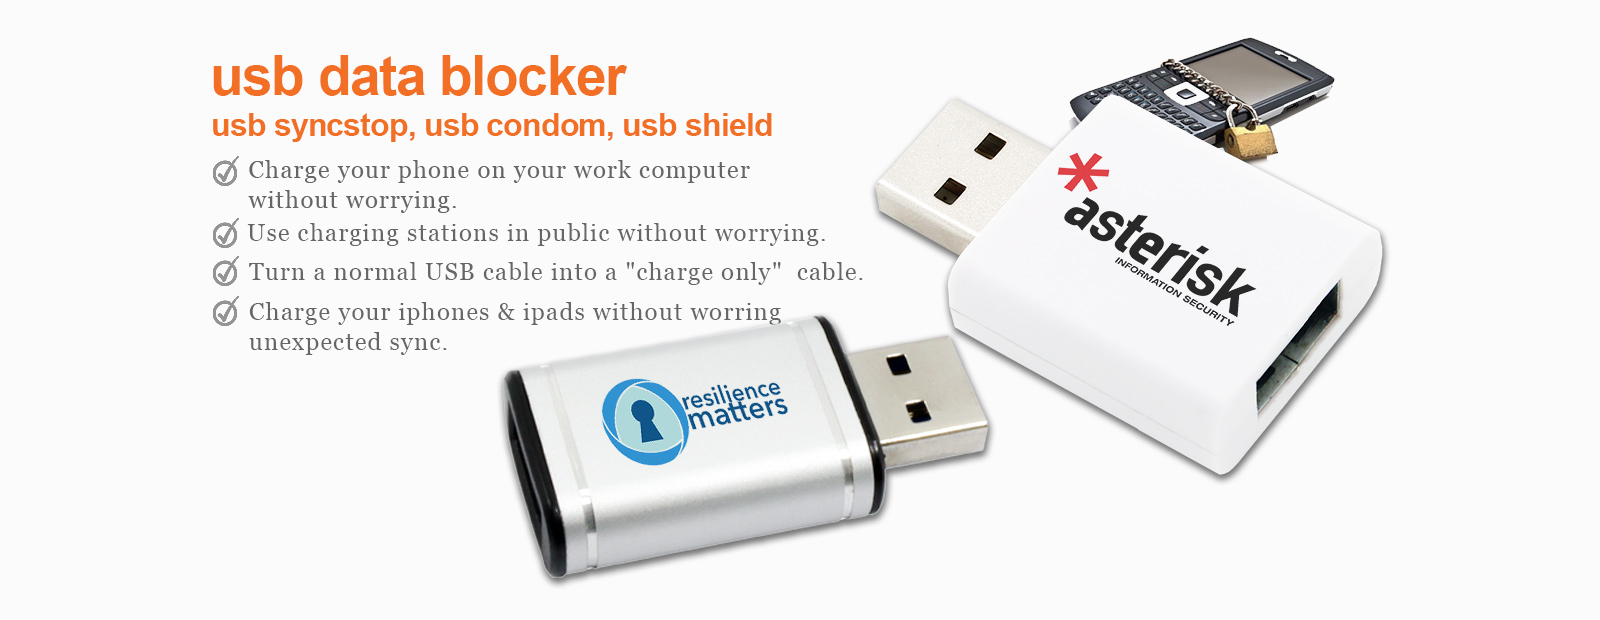 USB shield, USB Condom, USB syncstop, data blocker